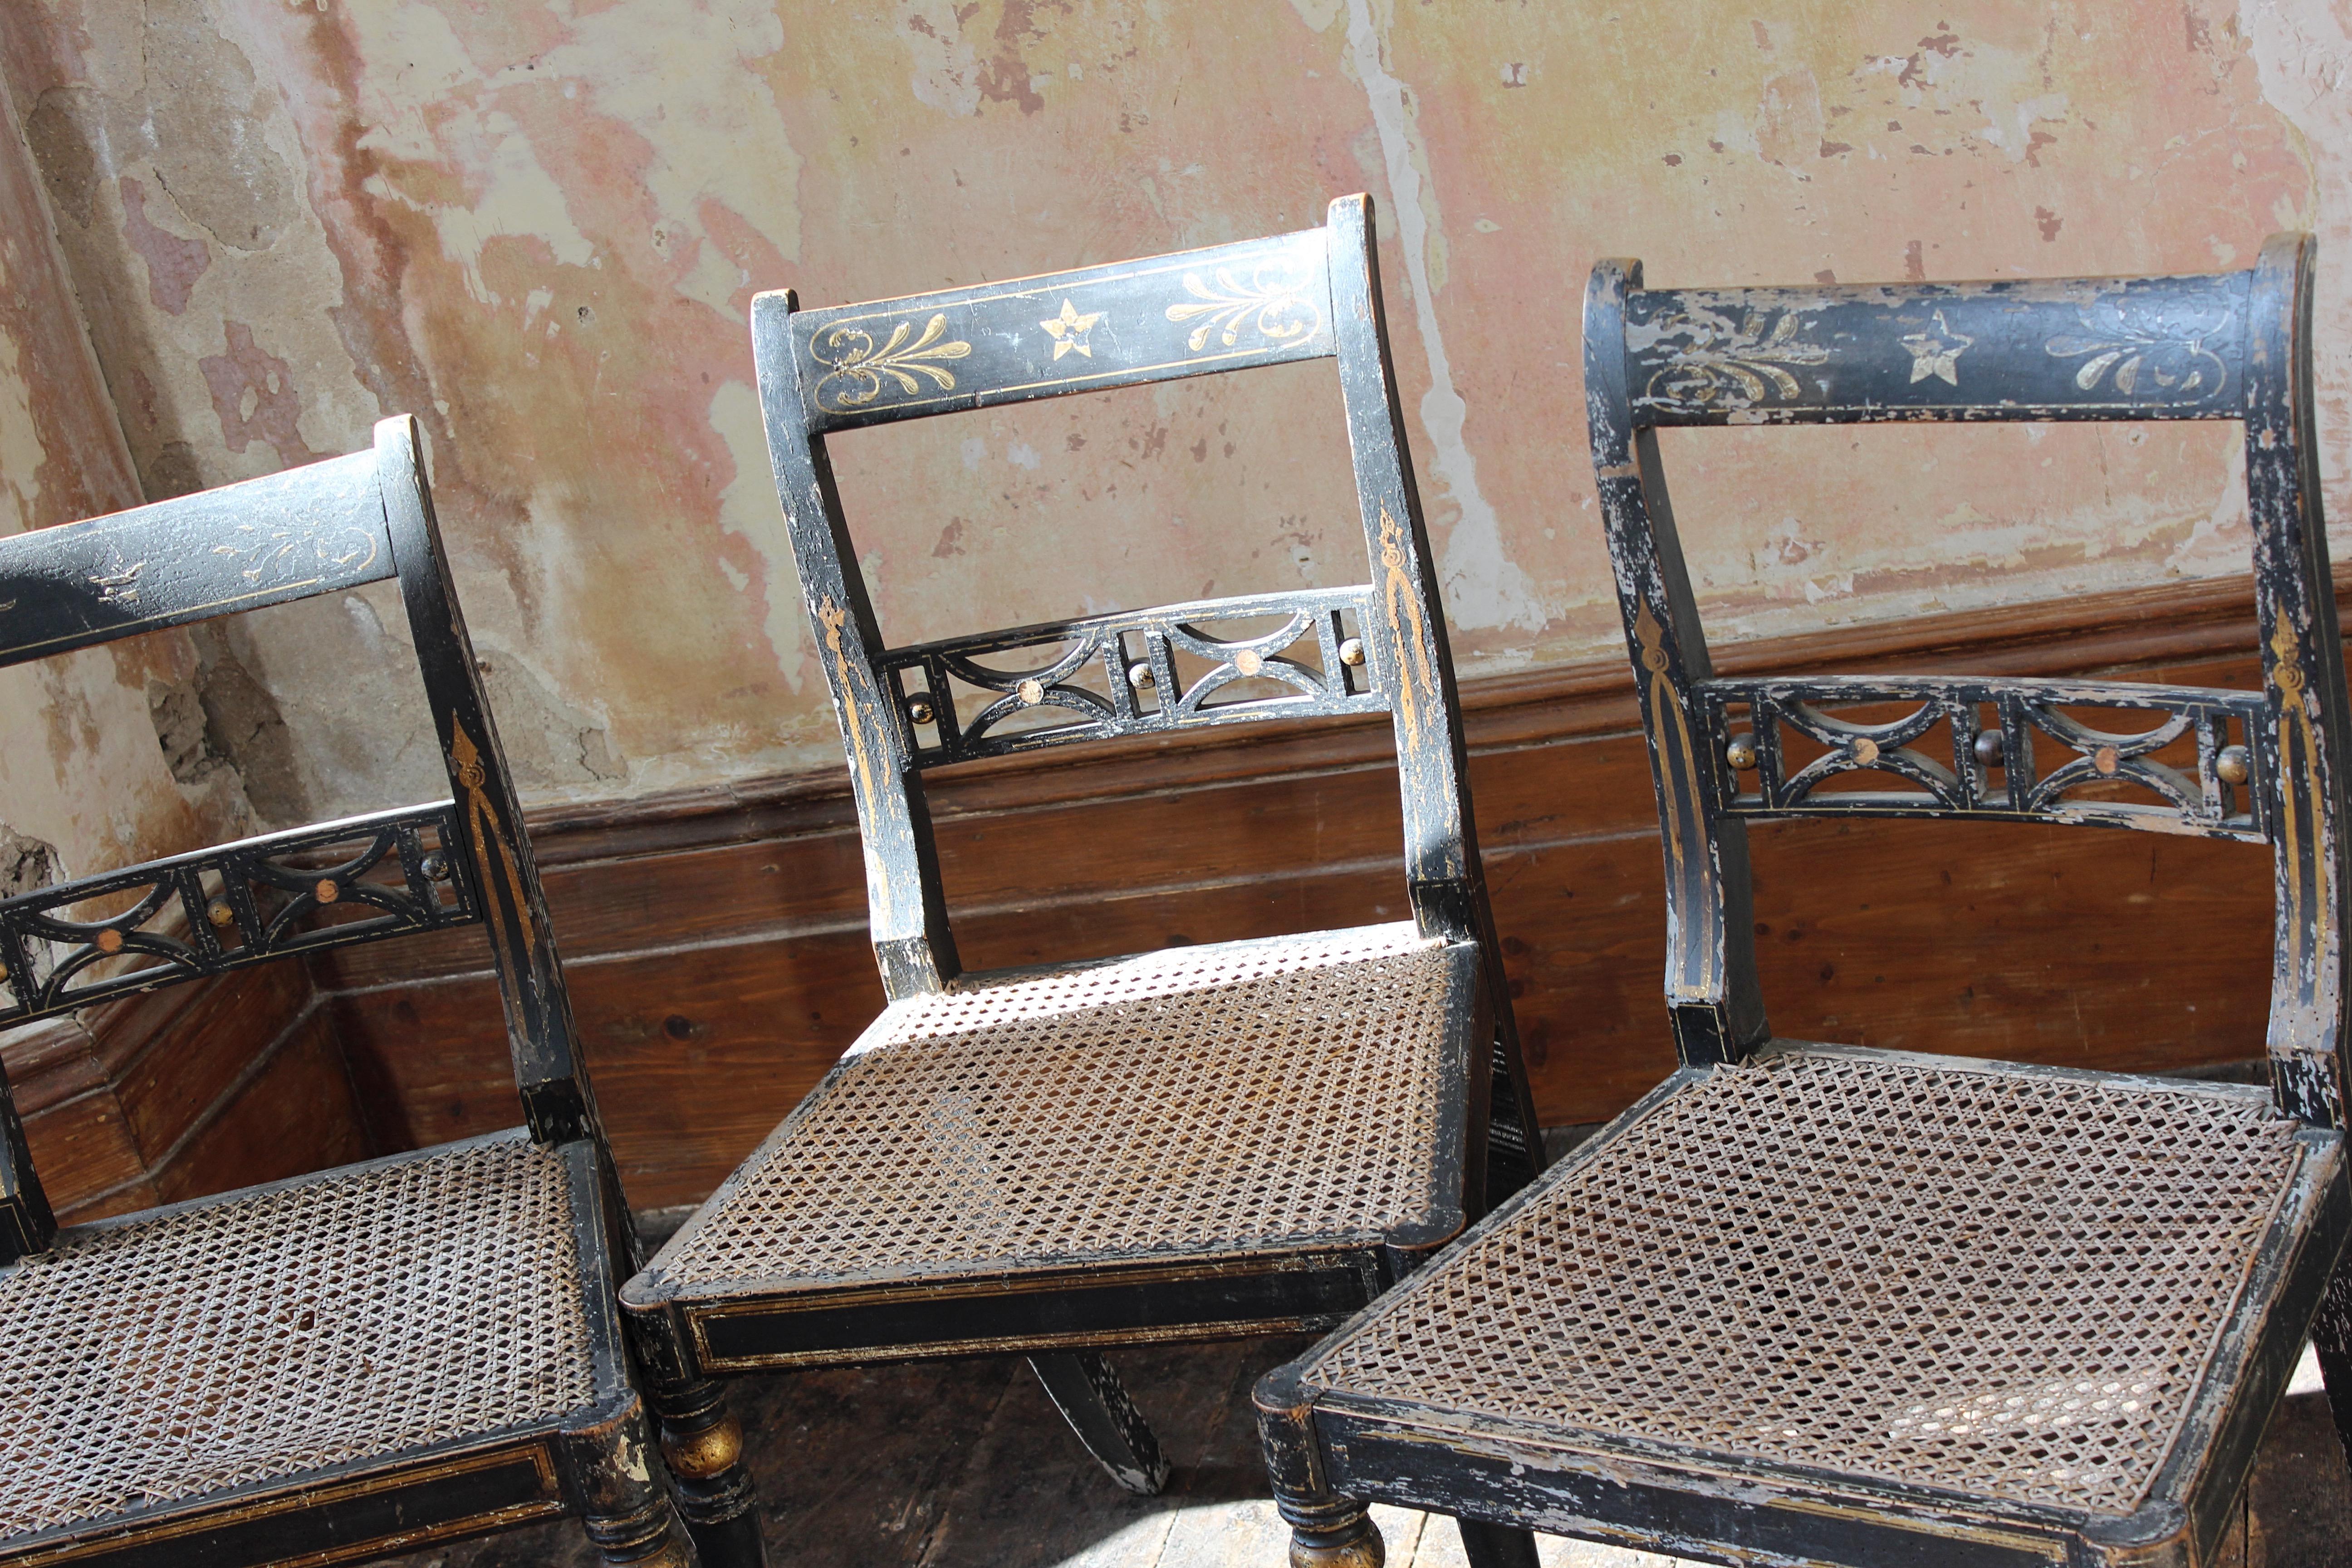 Trio de chaises d'époque Regency de fabrication anglaise. Âge : fin du 18e siècle, début du 19e siècle.

Les chaises ont leur finition originale ébonisée peinte en noir avec des détails originaux peints à la main et dorés. Structure en piquets,